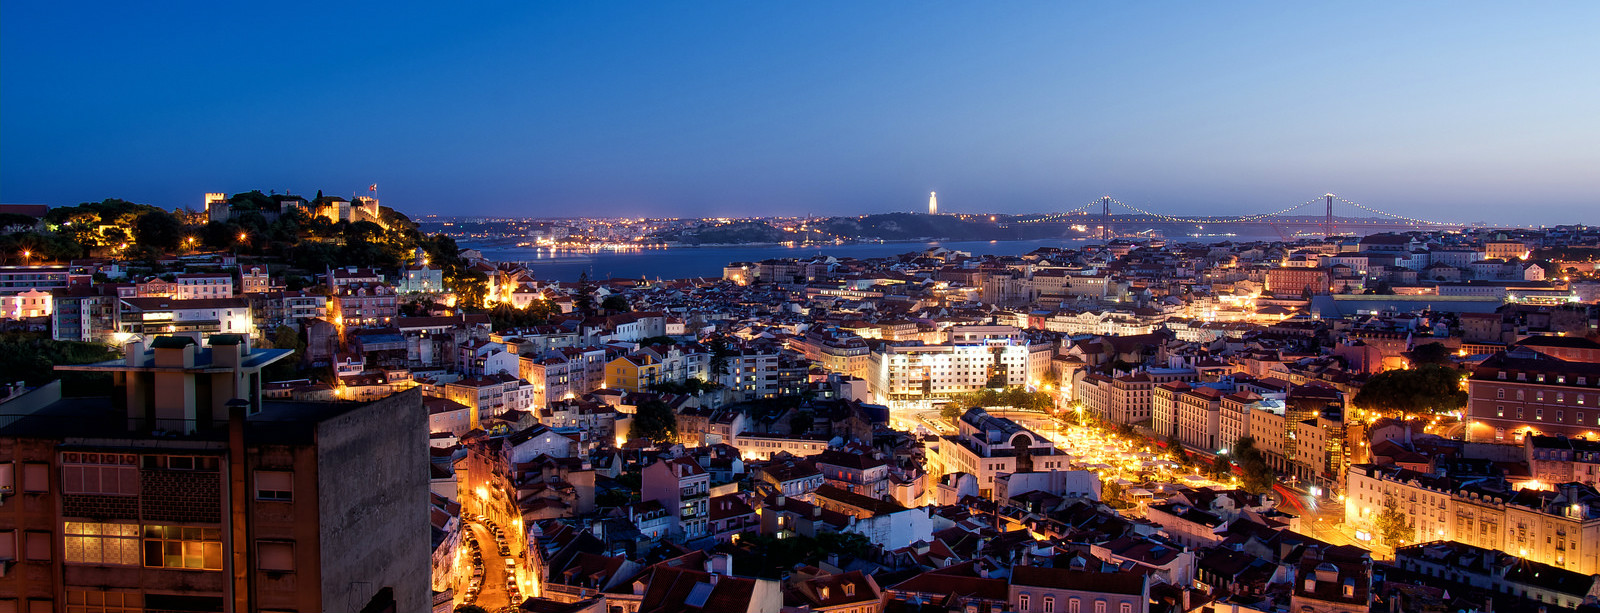 Belvedères de Lisbonne